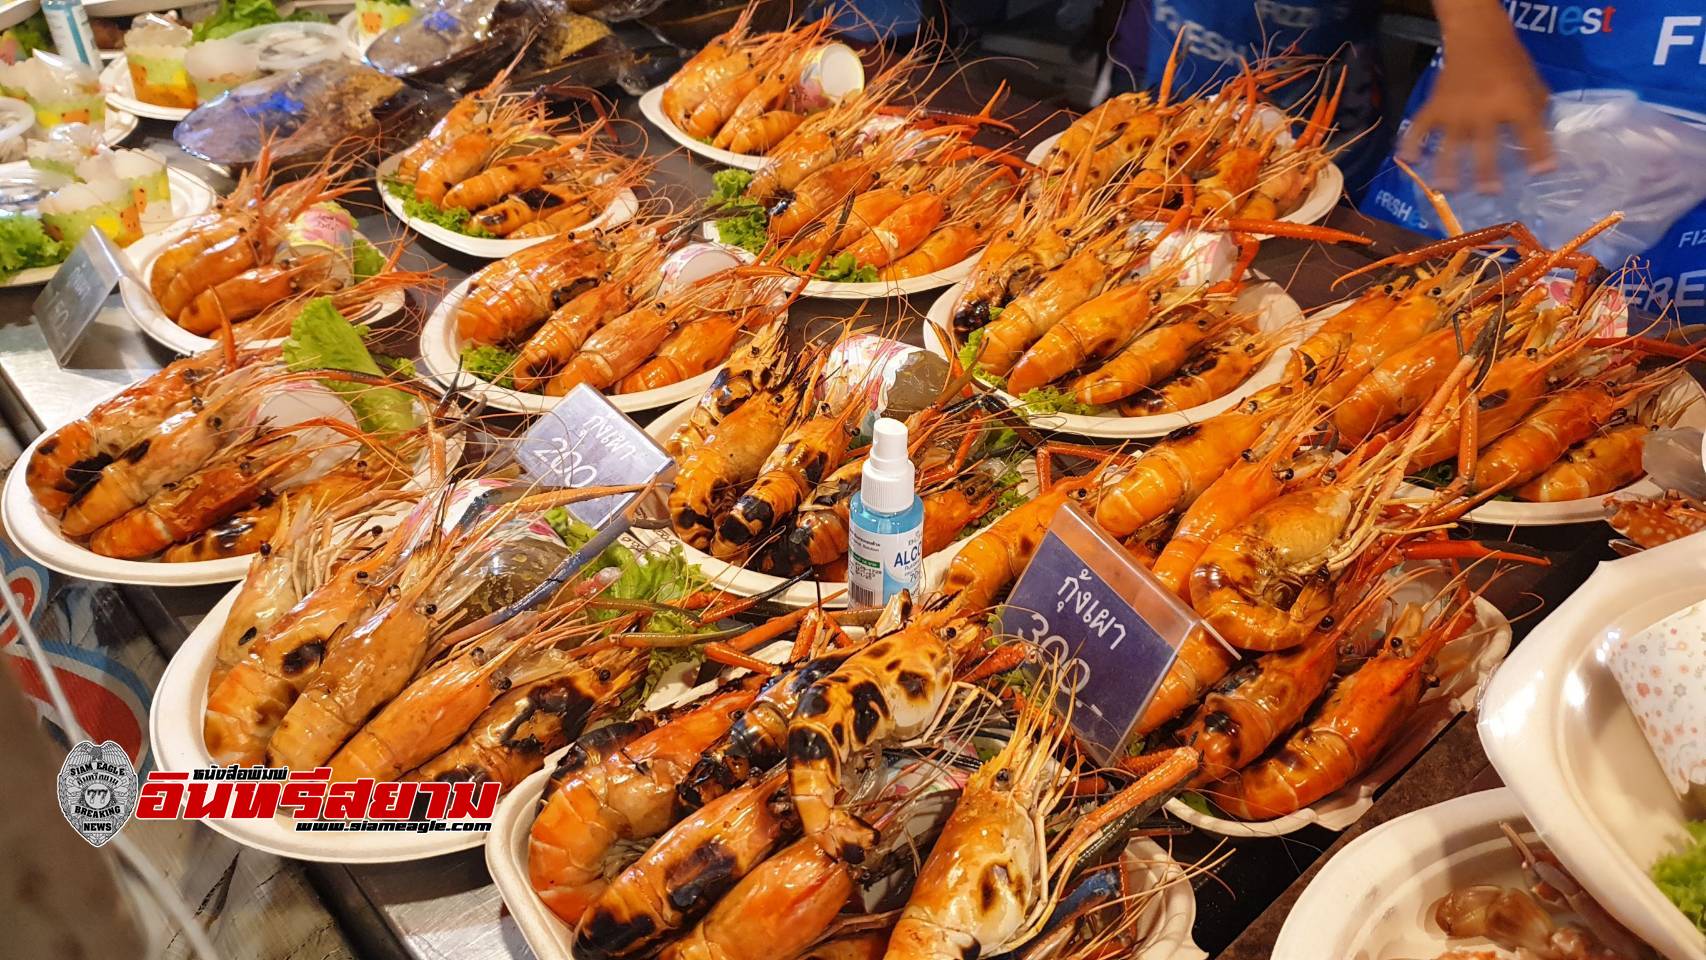 เพชรบุรี-เริ่มแล้วงานเทศกาลชิมปูชัก@ชะอำ ครั้งที่8 รับประกันปูสดอร่อยจากทะเลอาวไทย